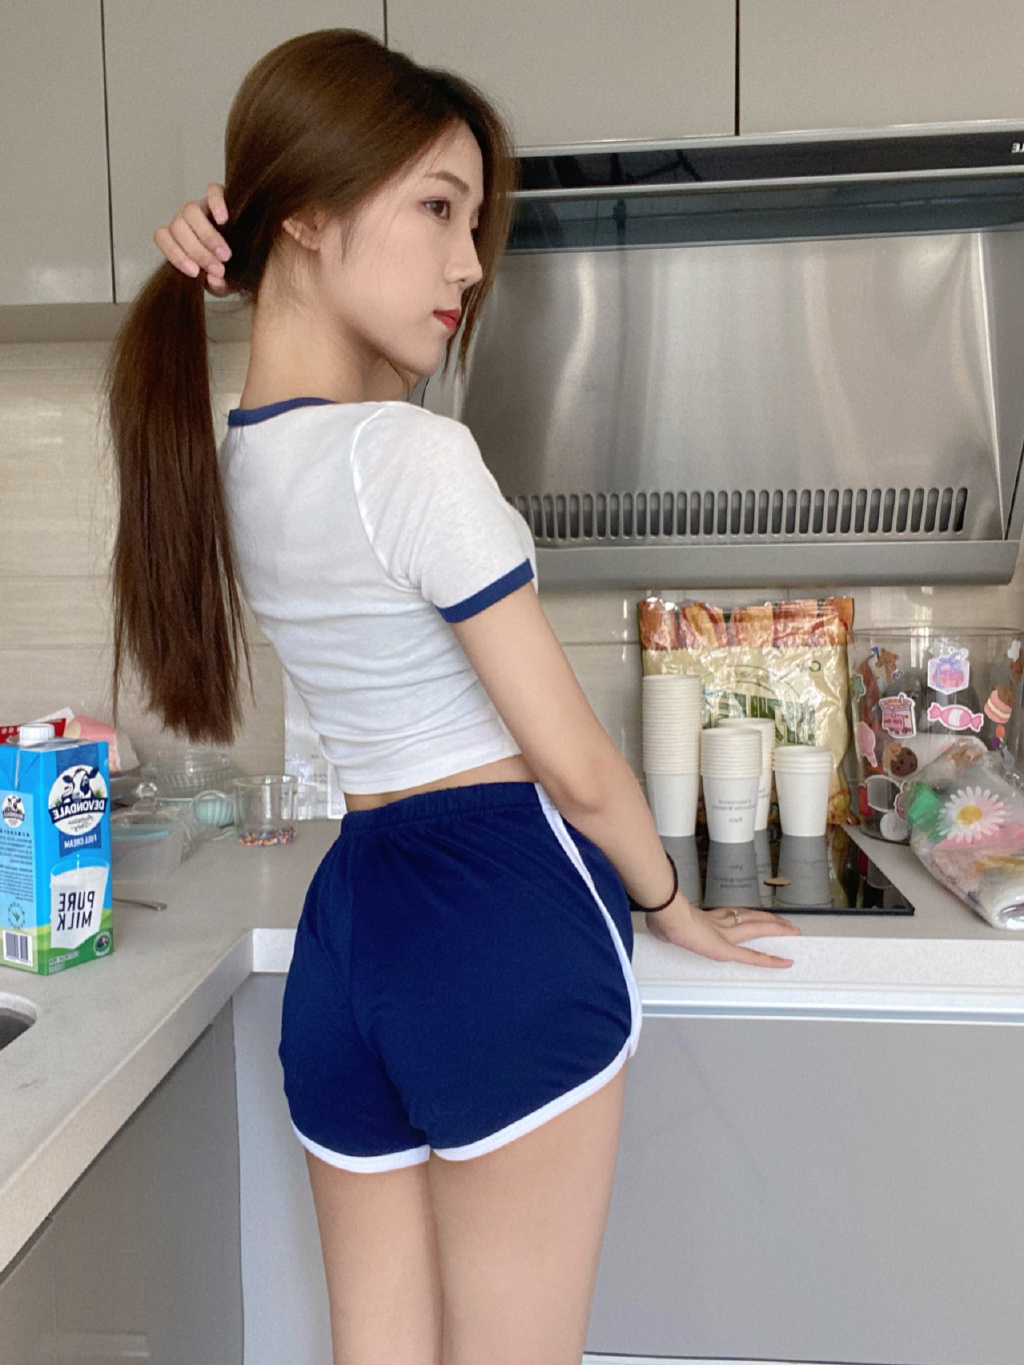 性感可爱美女小姐姐蓝色运动制服短裤白袜穿着居家厨房美拍照片套图1